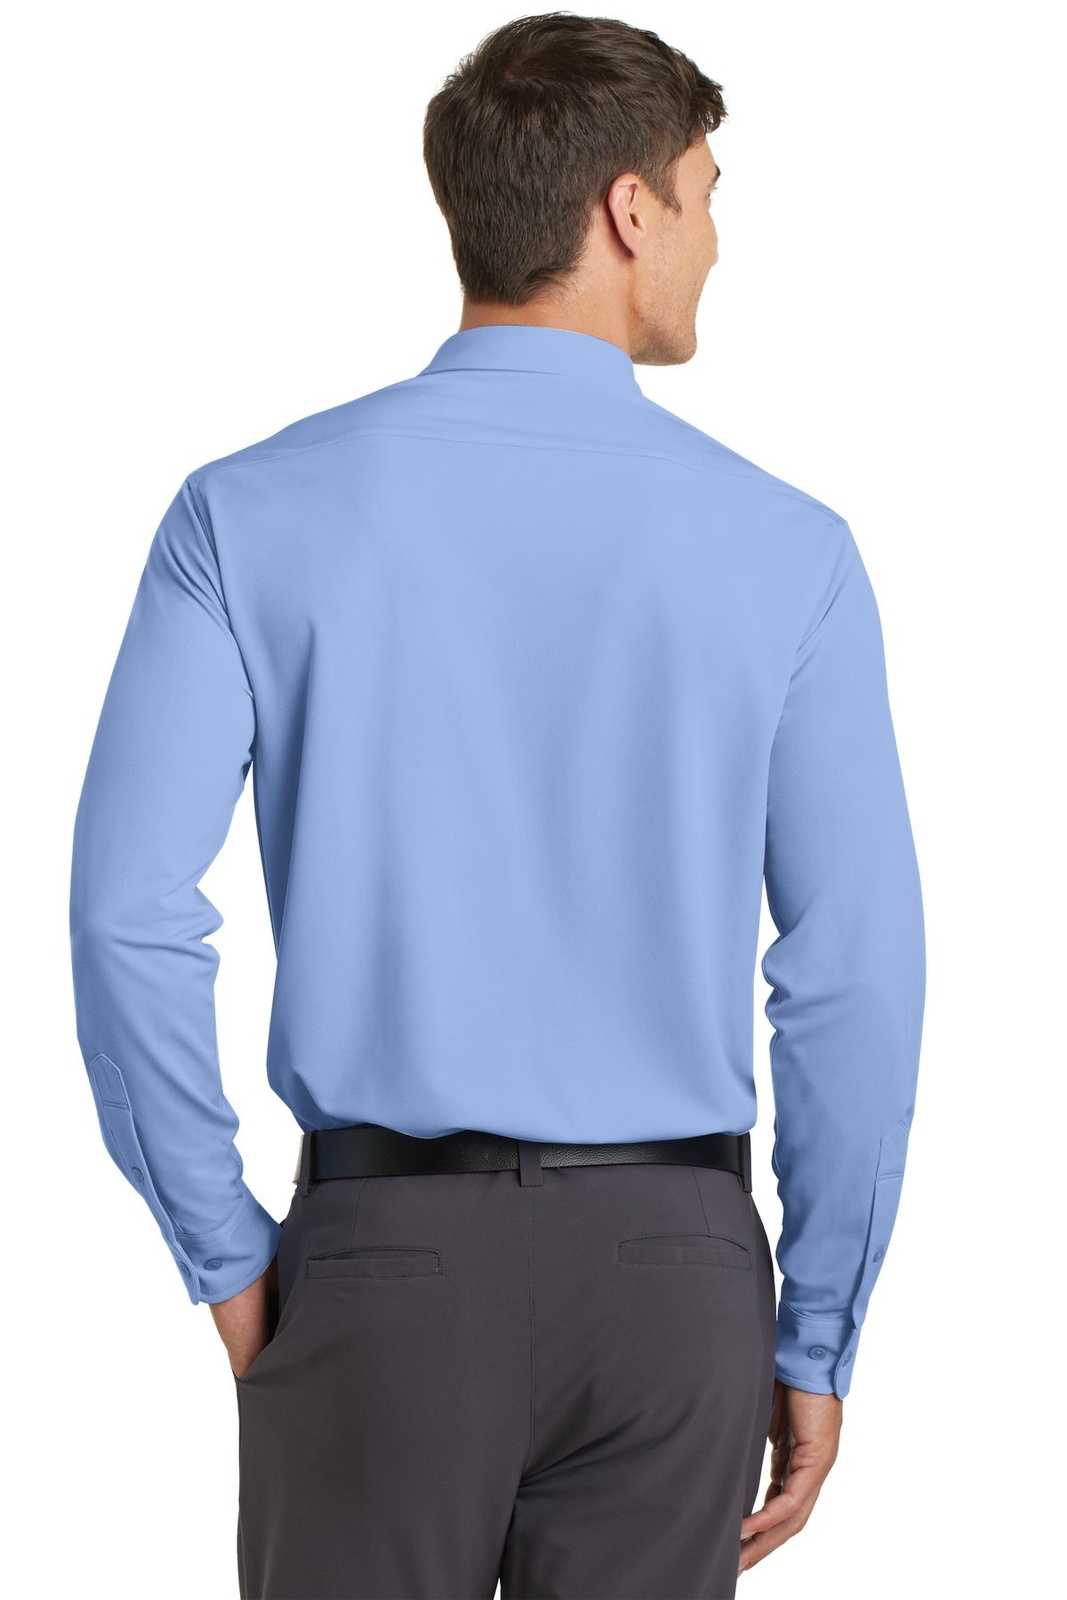 Port Authority K570 Dimension Knit Dress Shirt - Dress Shirt Blue - HIT a Double - 2